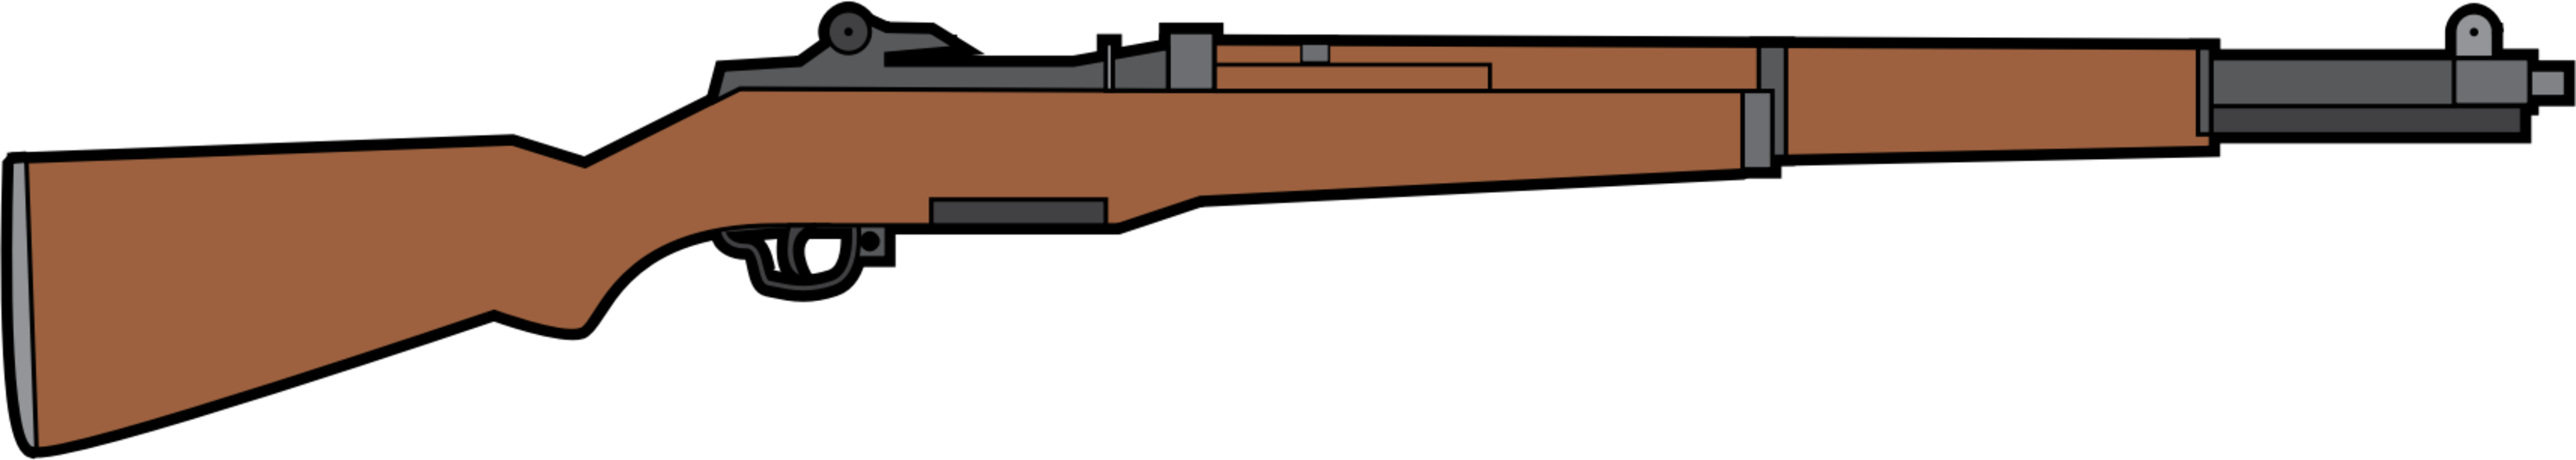 Gun Accessory,Sniper Rifle,Angle